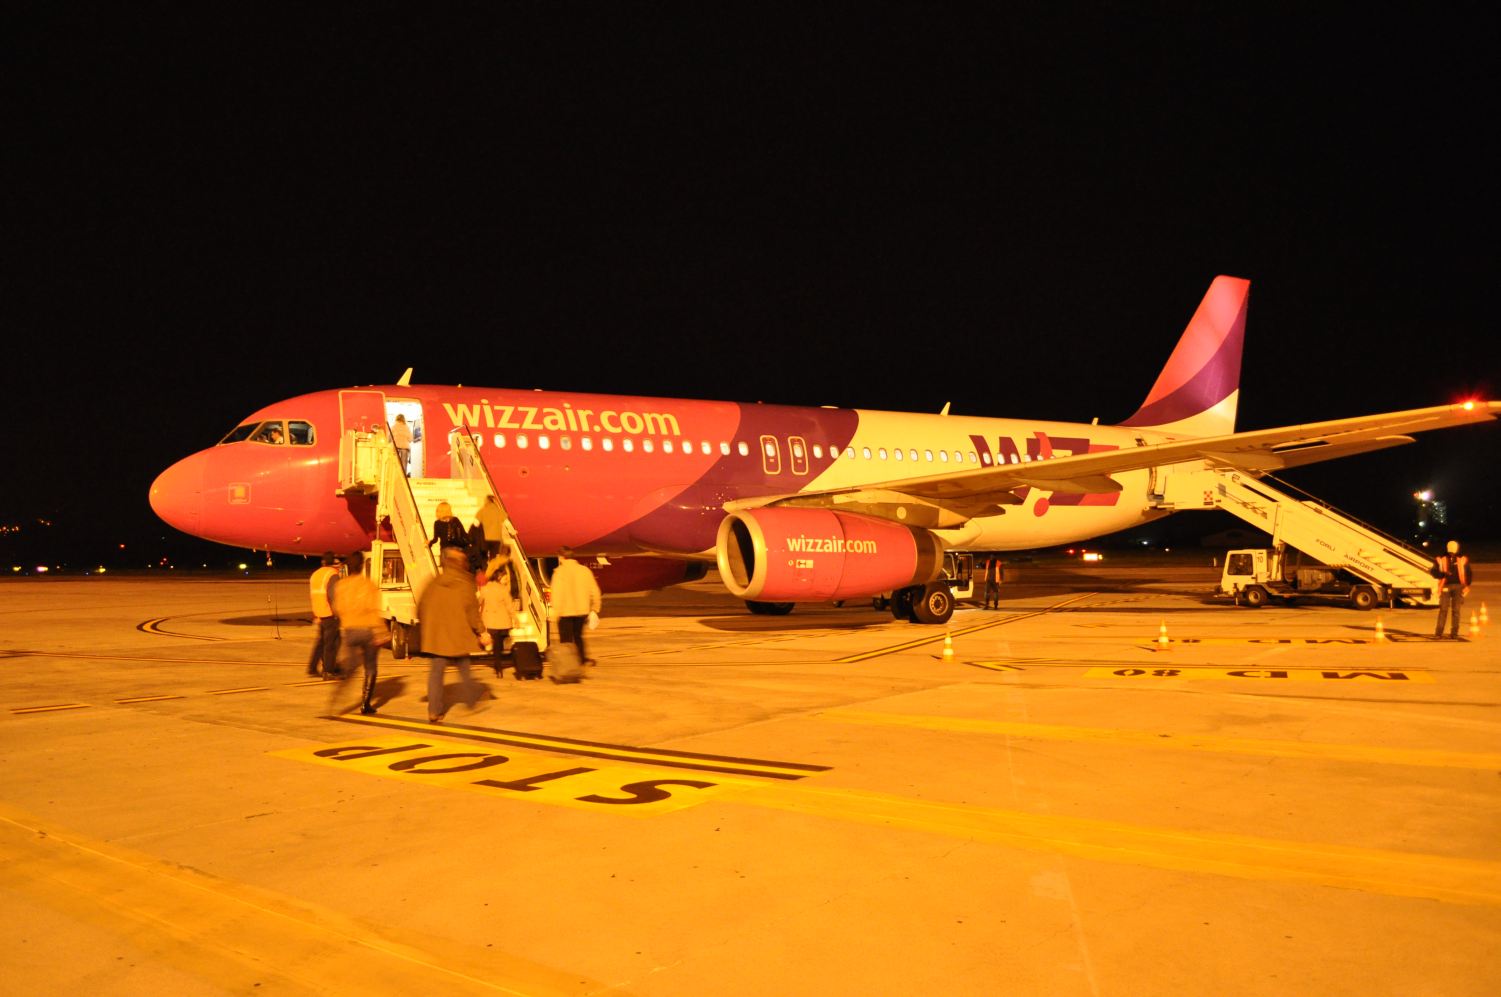 2011 novemberében a Wizzair budapesti járata megkezdte a beszállítást Forli repülőterén: abban a menetrendi időszakban a katowicei gép és személyzete repülte a budapesti kört is